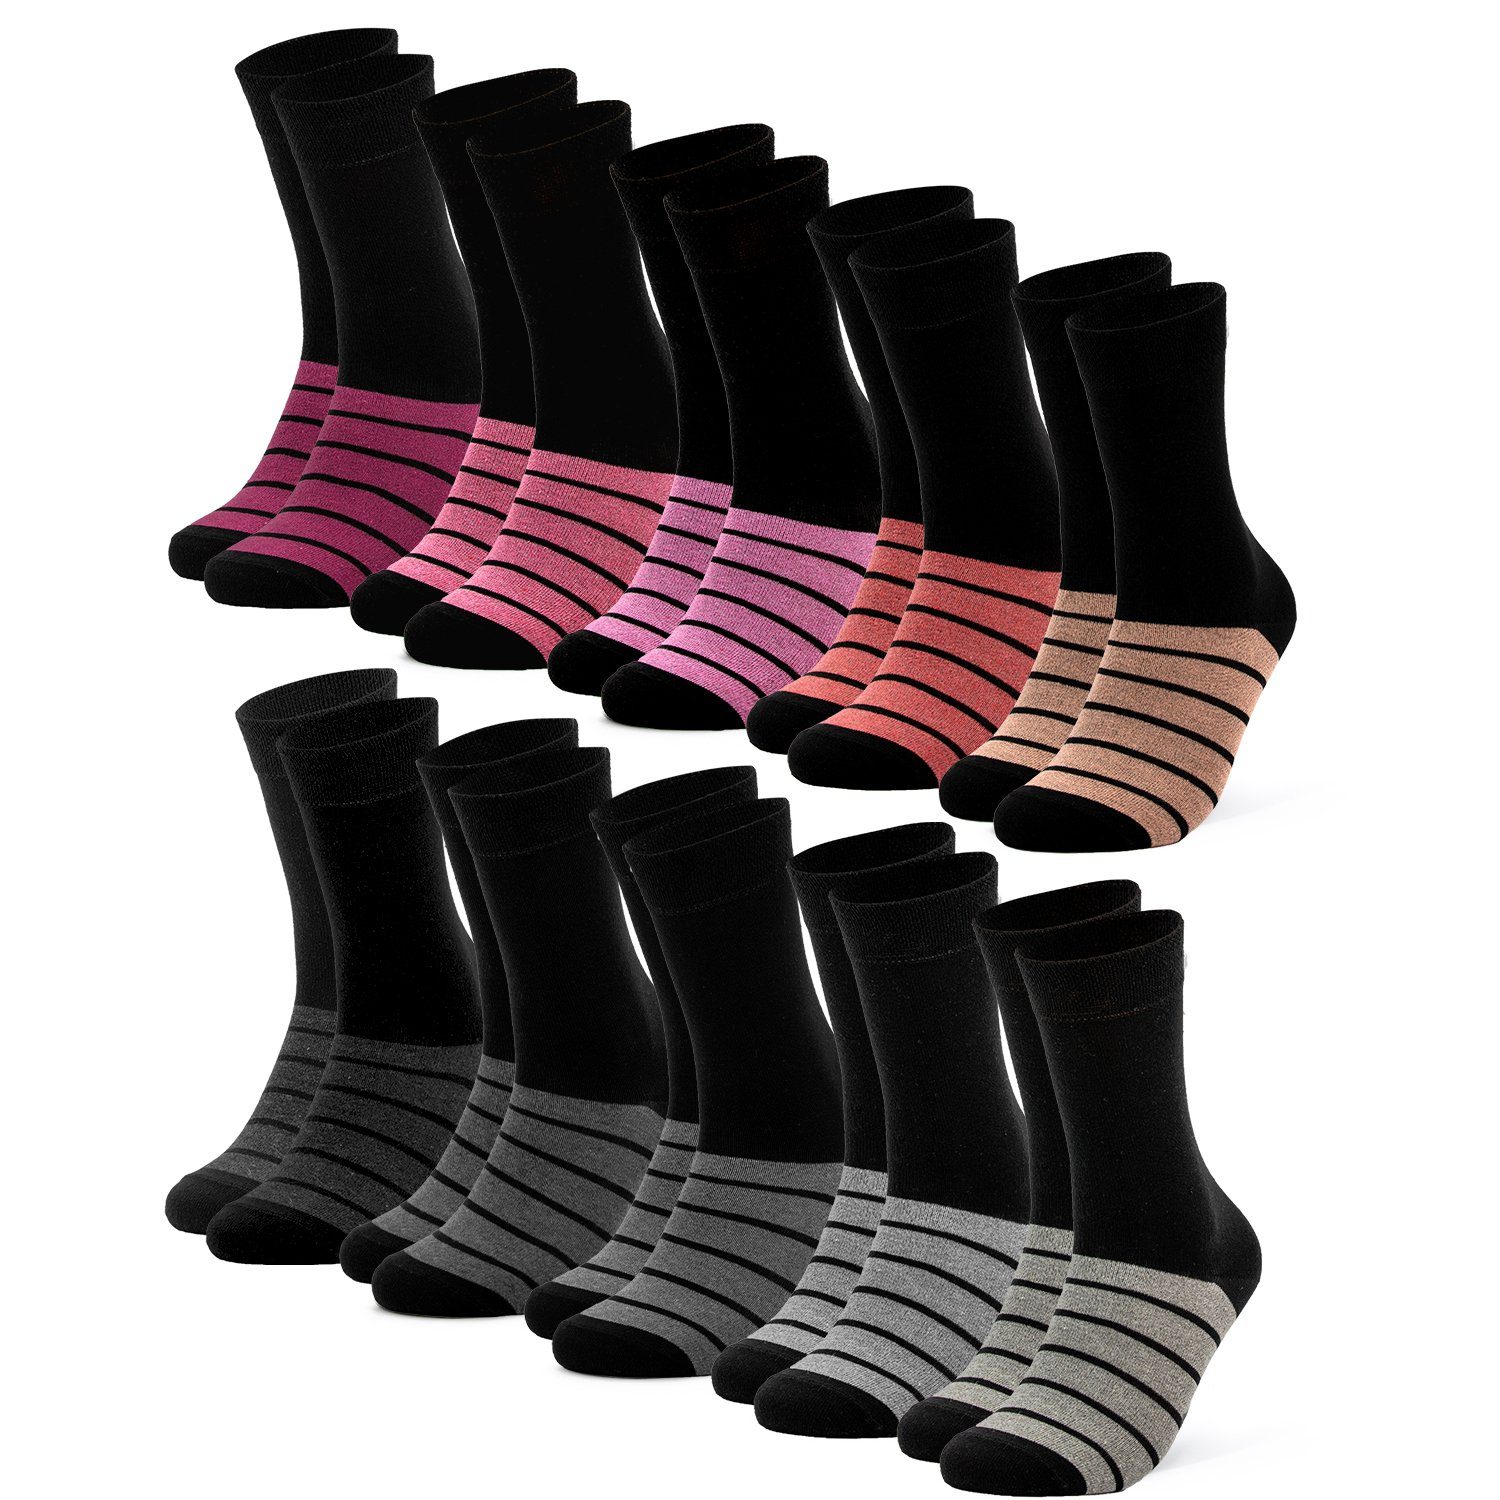 OCCULTO Basicsocken Damen Farbige Socken 10er Pack (Modell: Laura) (10-Paar) Pnk-Gry